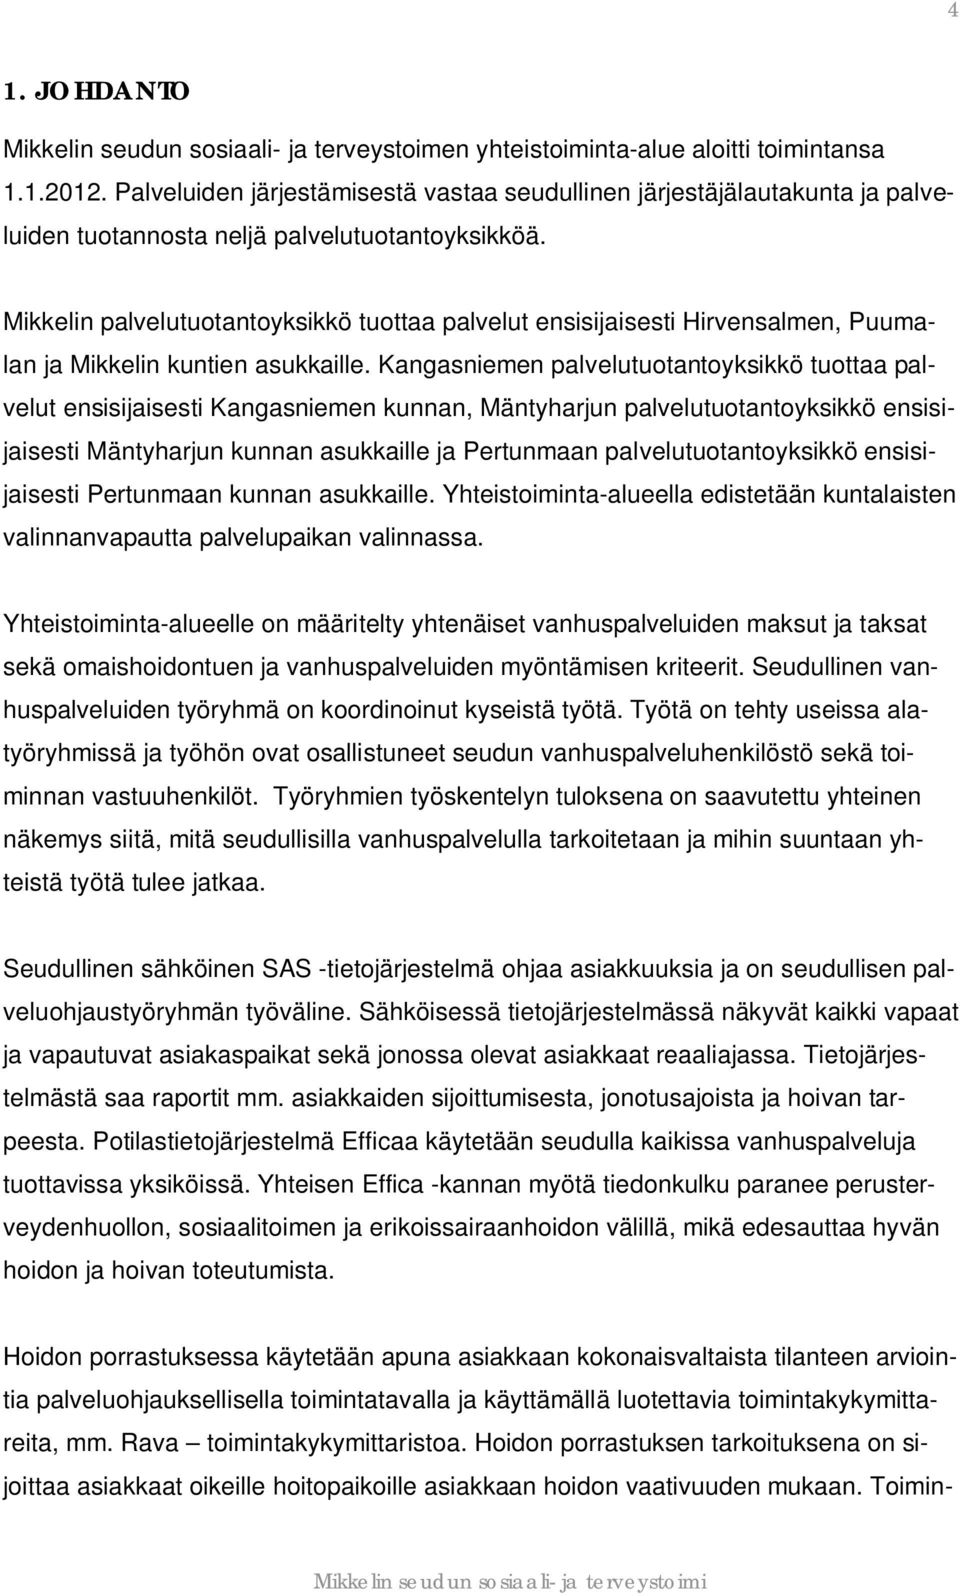 Mikkelin palvelutuotantoyksikkö tuottaa palvelut ensisijaisesti Hirvensalmen, Puumalan ja Mikkelin kuntien asukkaille.